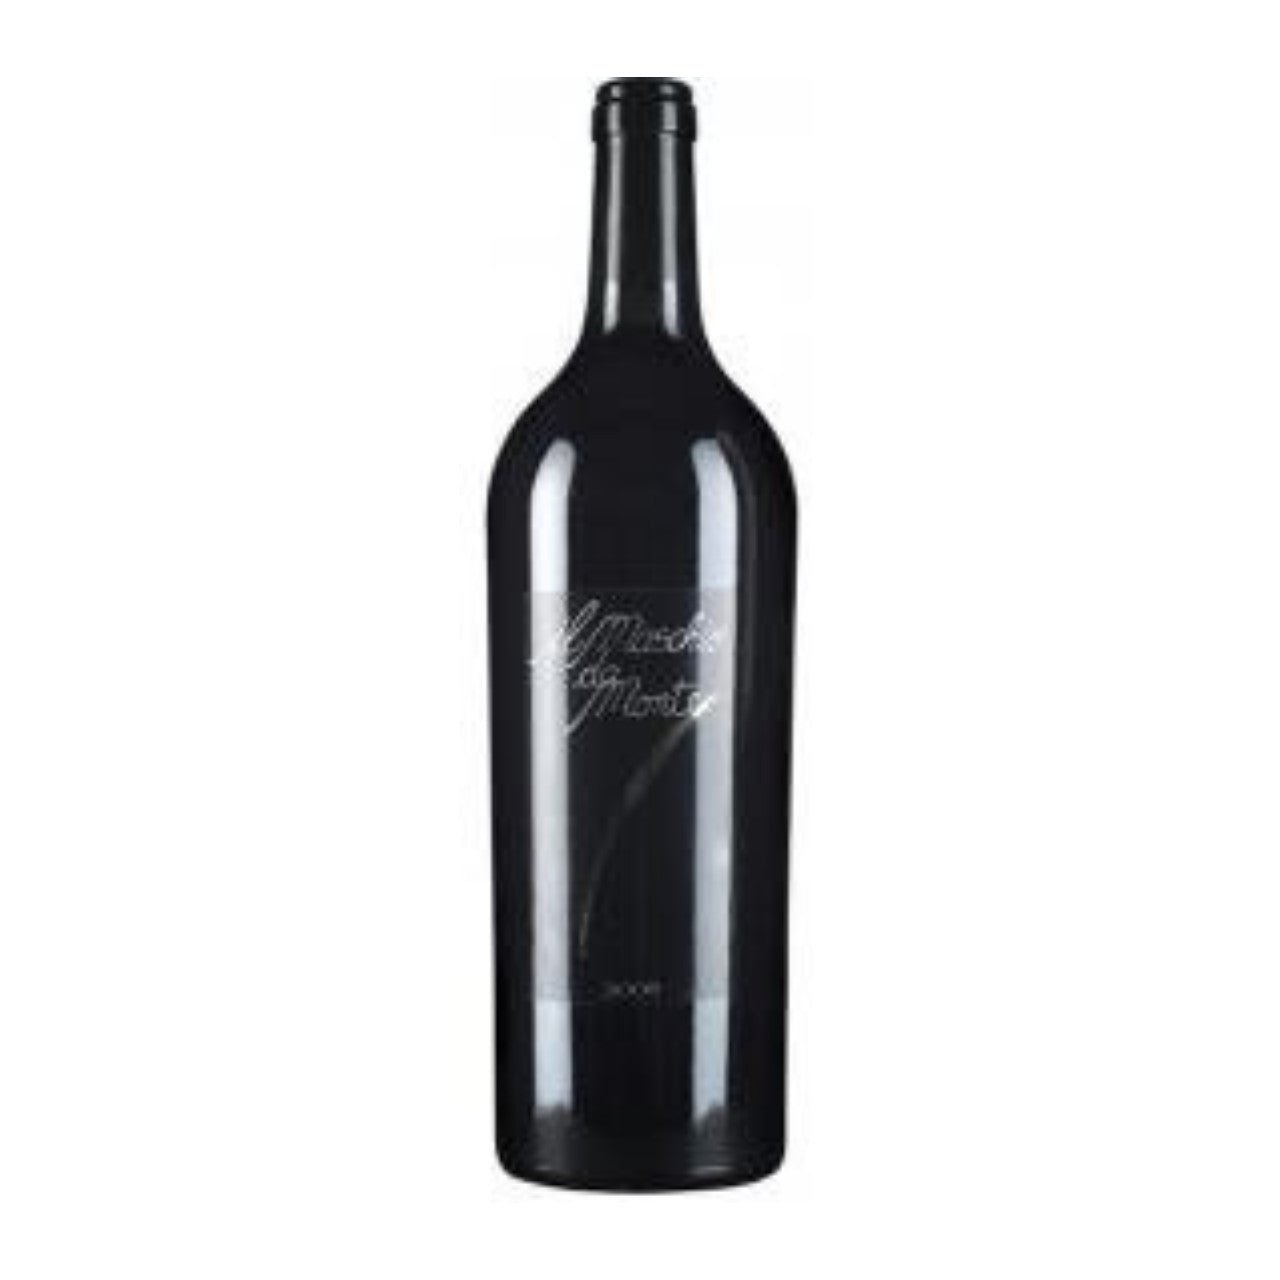 Santa Barbara Stefano Antonucci 'Il Maschio da Monte' Rosso Piceno 2020 - Wine Italy Red - Liquor Wine Cave